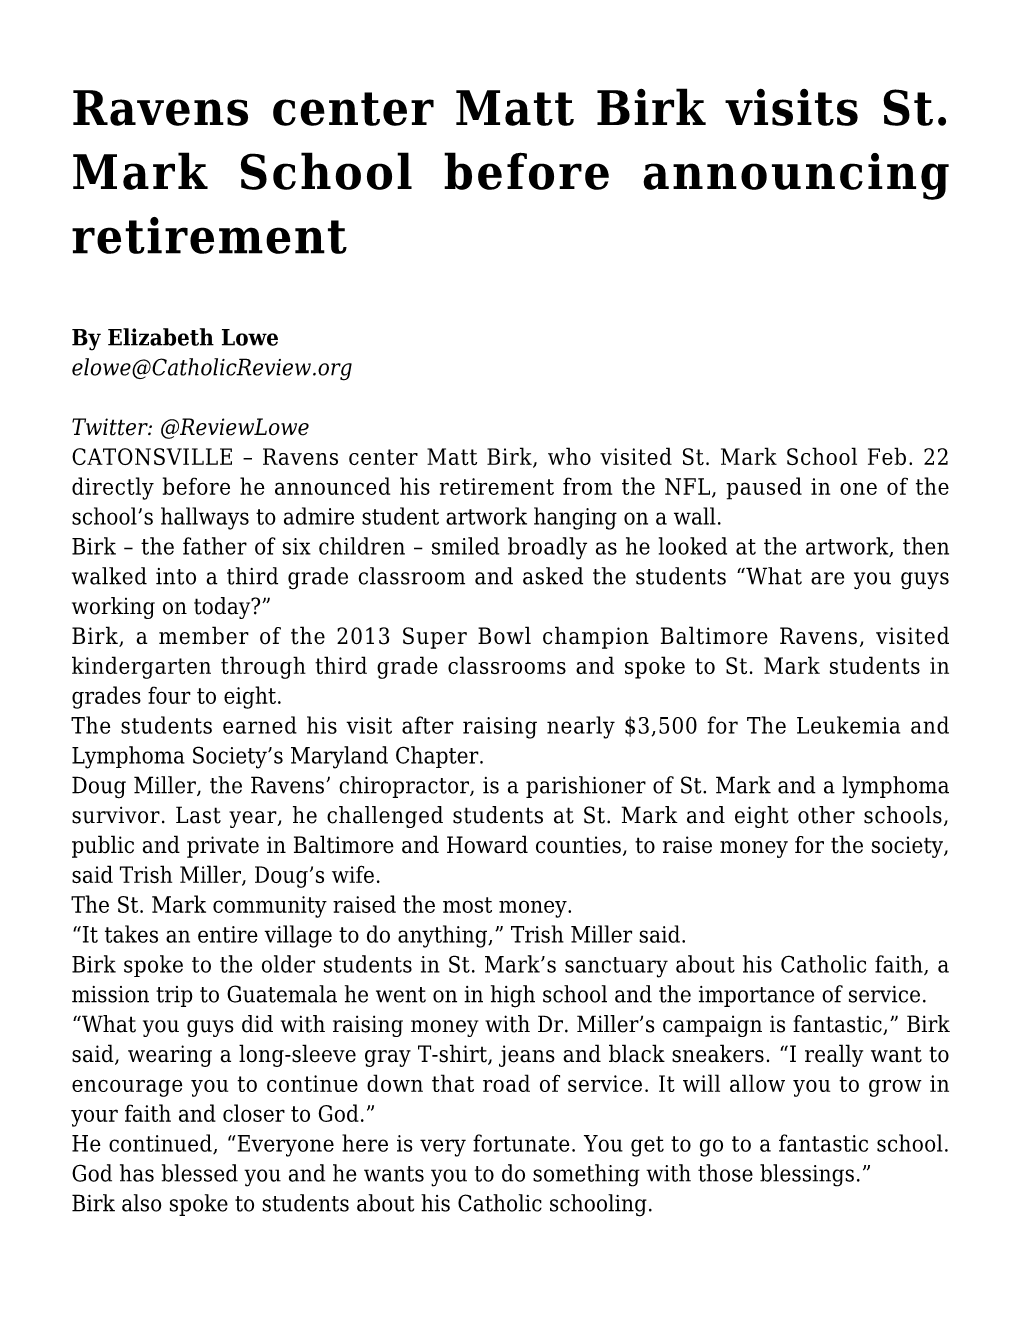 Ravens Center Matt Birk Visits St. Mark School Before Announcing Retirement